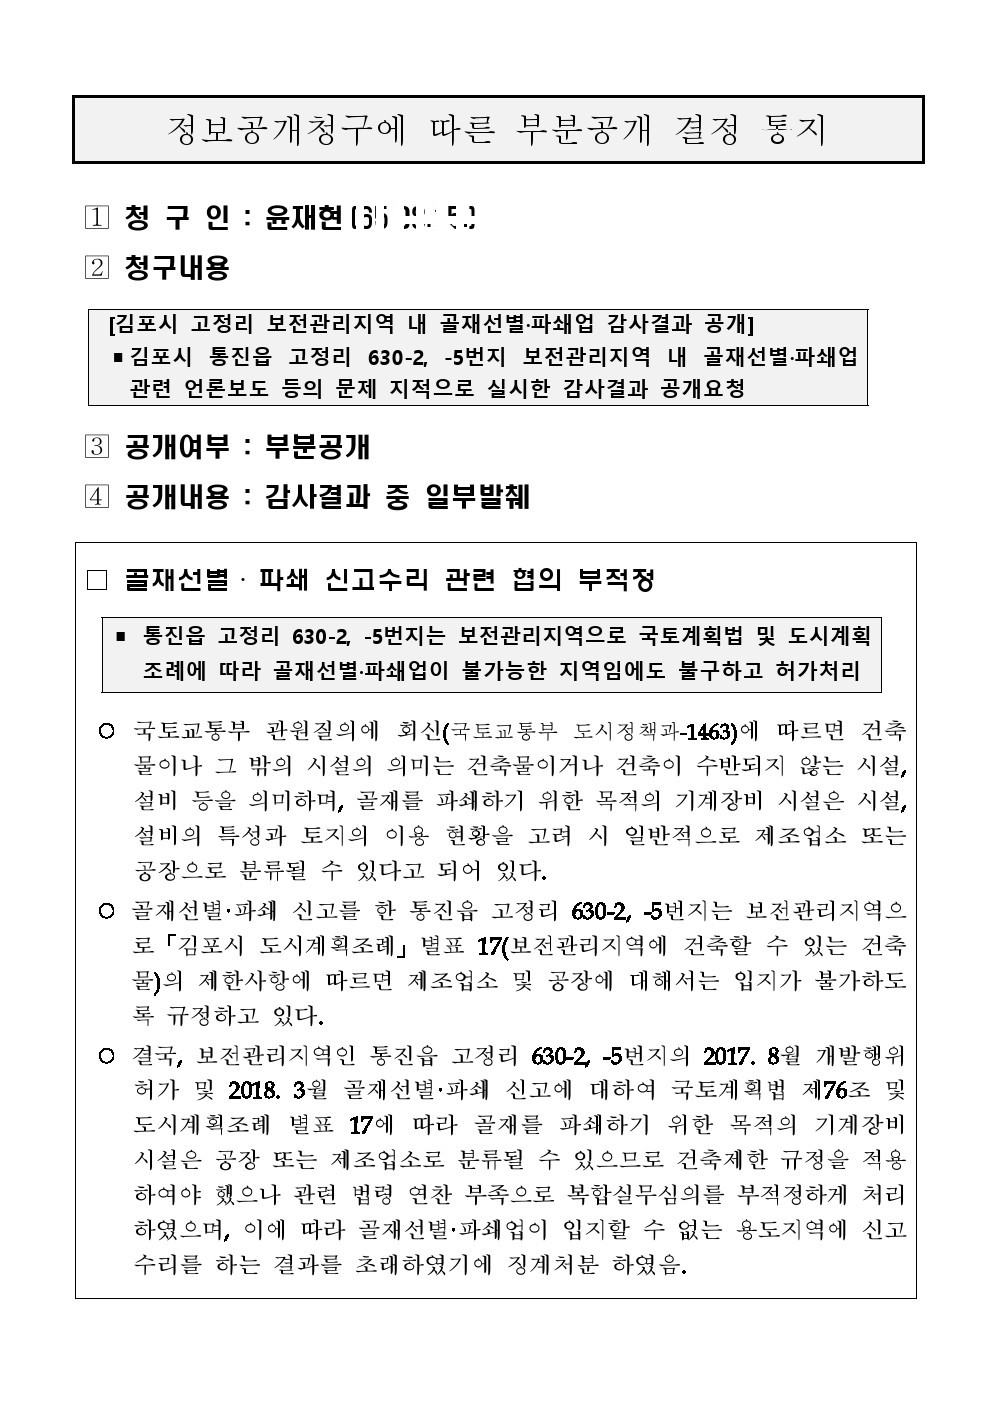 김포시 감사결과 정보공개청구에 따른 공개 결정통지문. 김포시 제공